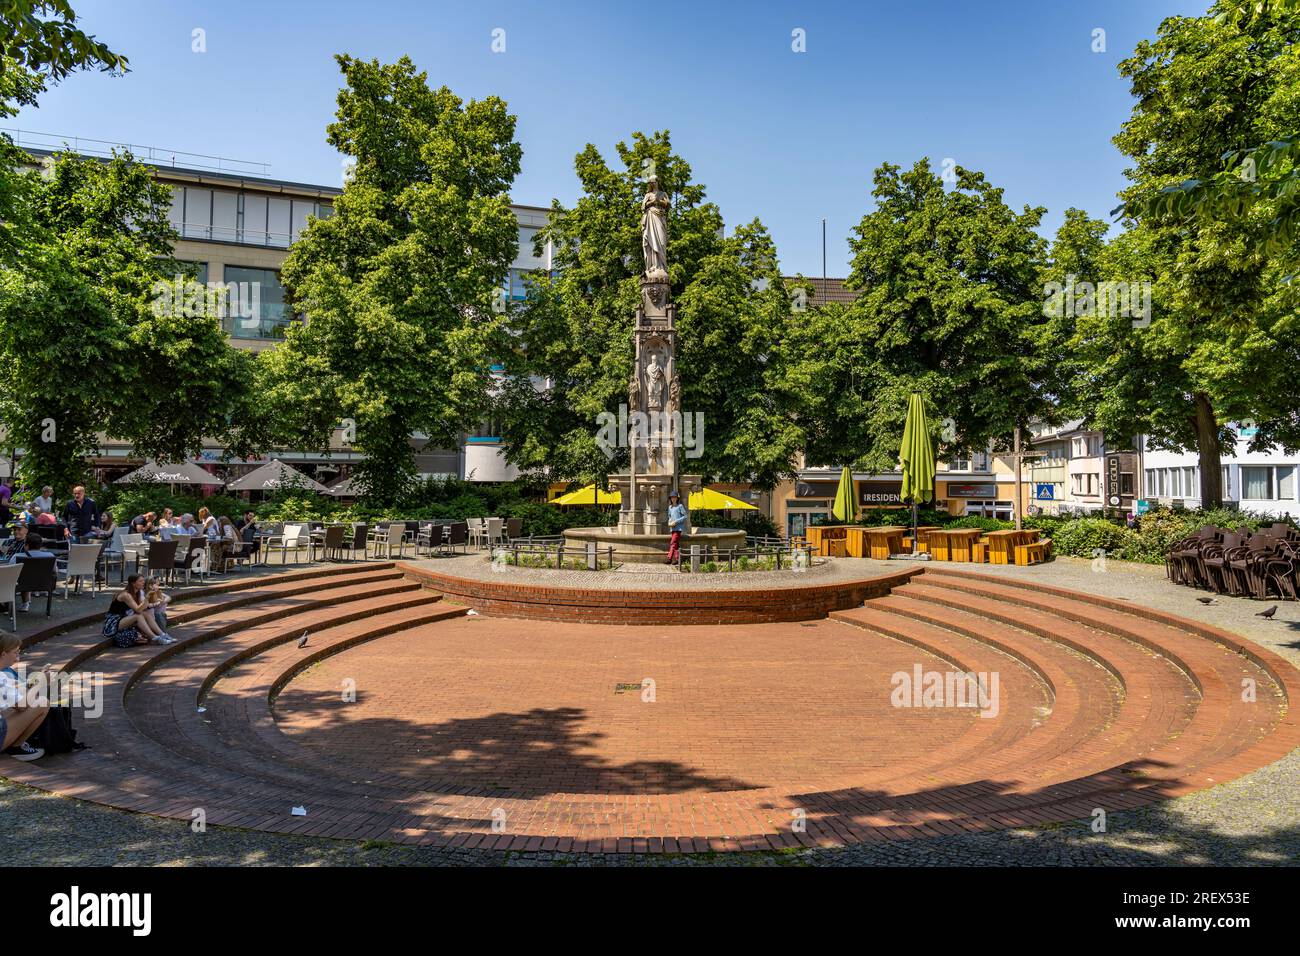 Mariensäule auf dem Marienplatz in Paderborn, Nordrhein-Westfalen, Deutschland, Europa | Mariensäule Mary's Column on  Marienplatz square in  Paderbor Stock Photo